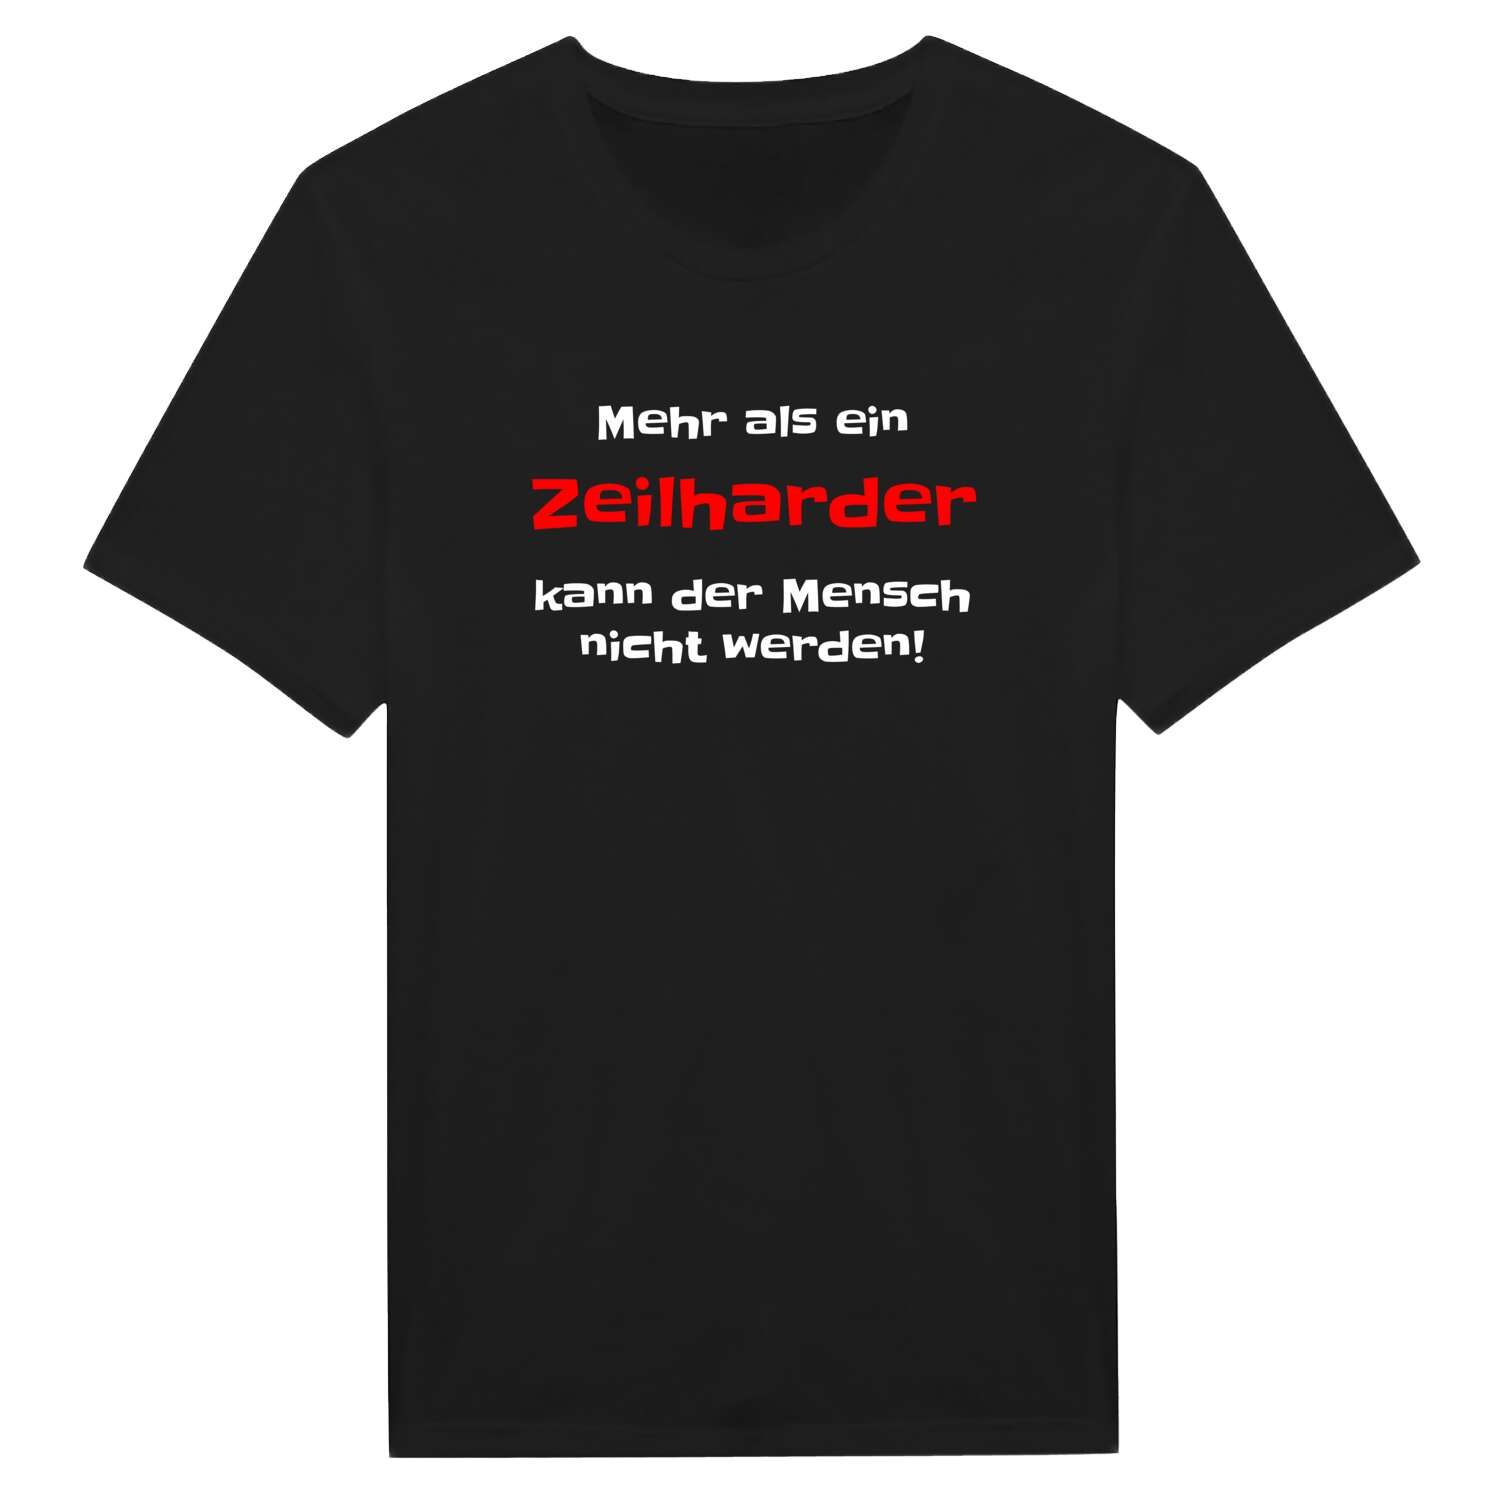 Zeilhard T-Shirt »Mehr als ein«